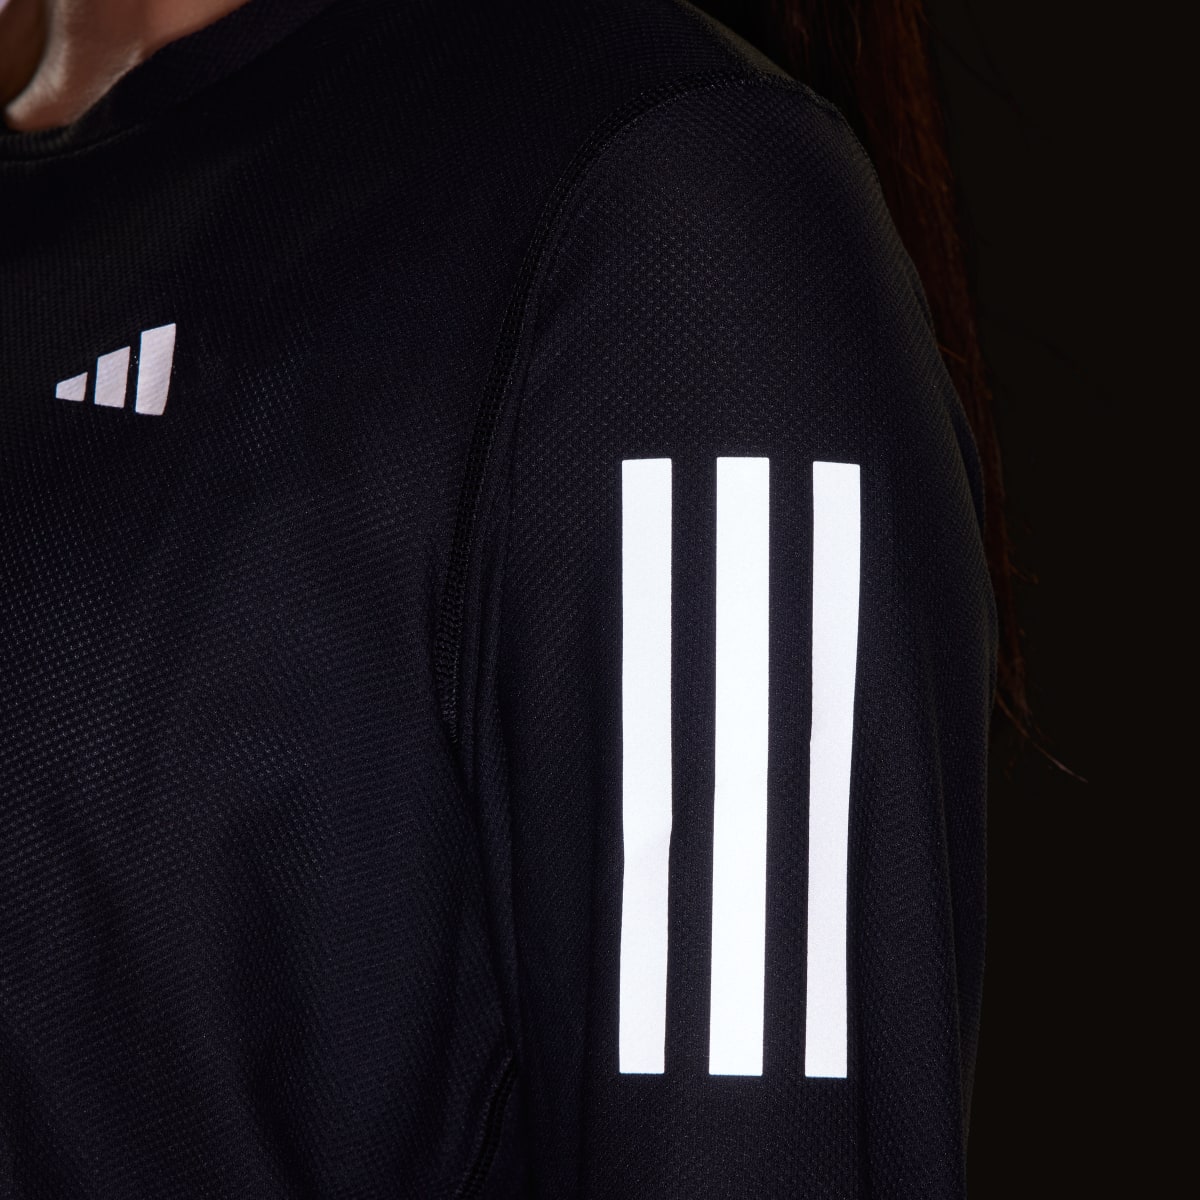 Adidas Own The Run Long Sleeve Long-Sleeve Top. 8